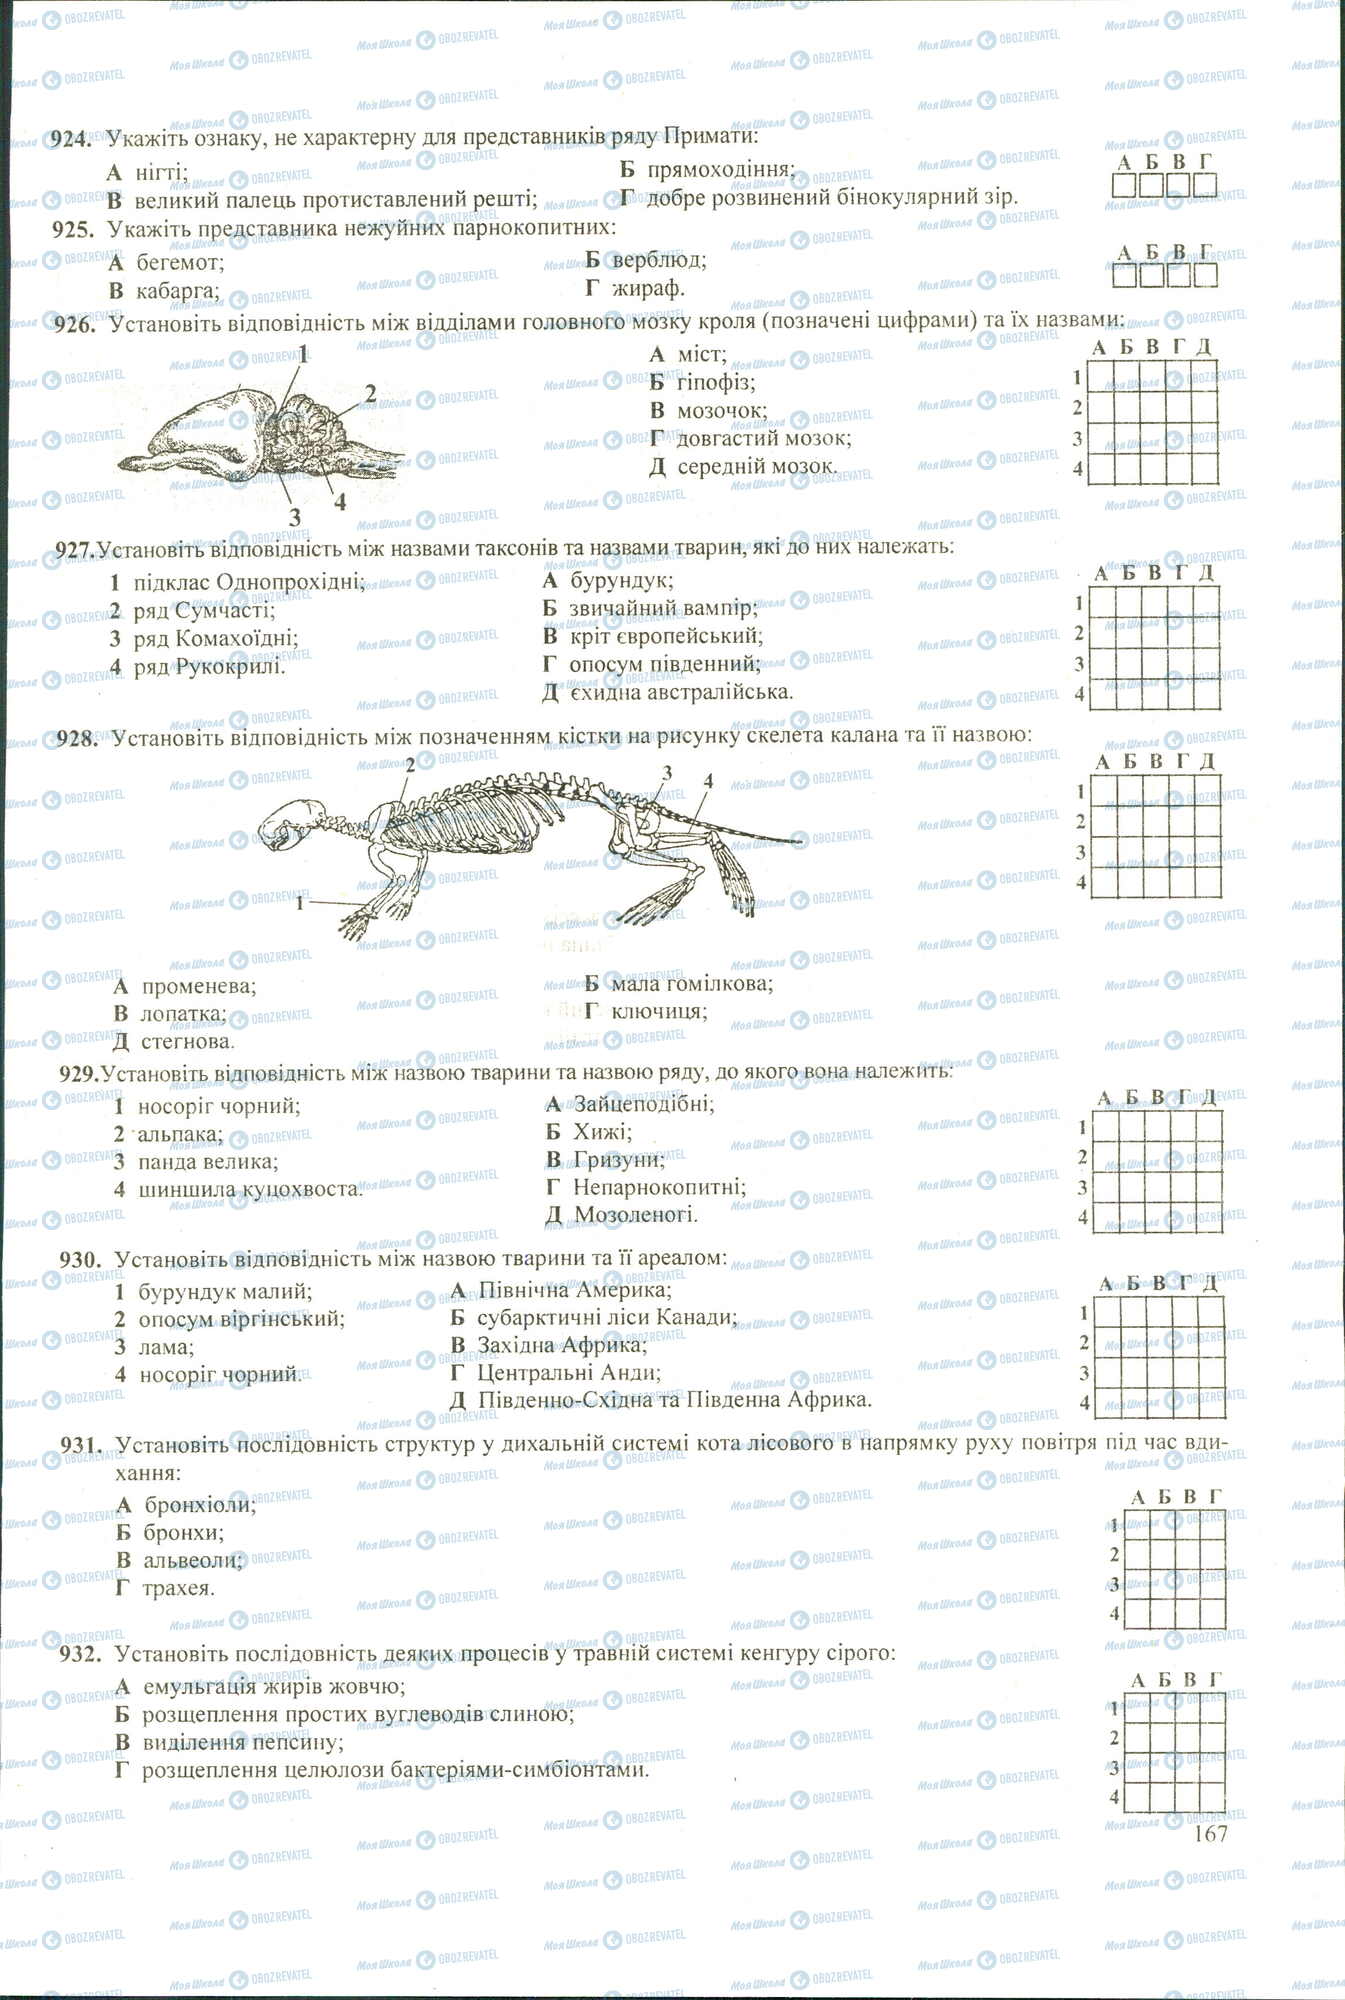 ЗНО Биология 11 класс страница 924-932